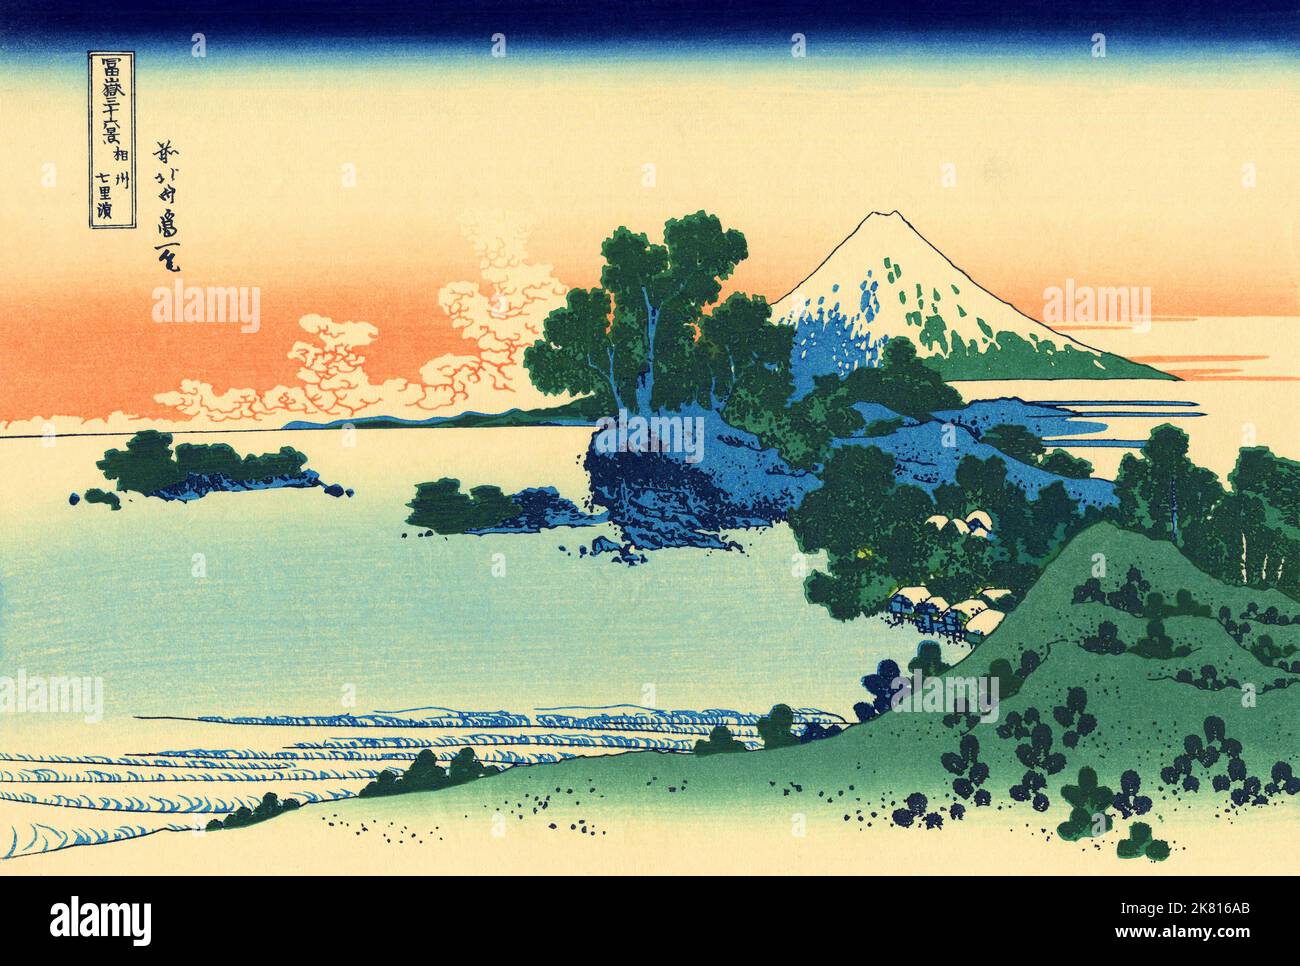 Japan: ‘Shichiri Beach in der Provinz Sagami’. Ukiyo-e Holzschnitt aus der Serie ‘36 Ansichten des Fuji’ von Katsushika Hokusai (31. Oktober 1760 - 10. Mai 1849), c. 1830. ‘36 Views of Mount Fuji’ ist eine ‘„Sukiyo-e“-Serie großer Holzschnitte der Künstlerin Katsushika Hokusai. Die Serie zeigt den Fuji in unterschiedlichen Jahreszeiten und Wetterbedingungen an verschiedenen Orten und Entfernungen. Es besteht tatsächlich aus 46 Drucken, die zwischen 1826 und 1833 entstanden sind. Die ersten 36 wurden in die Originalpublikation aufgenommen, und aufgrund ihrer Popularität kamen danach 10 weitere hinzu. Stockfoto